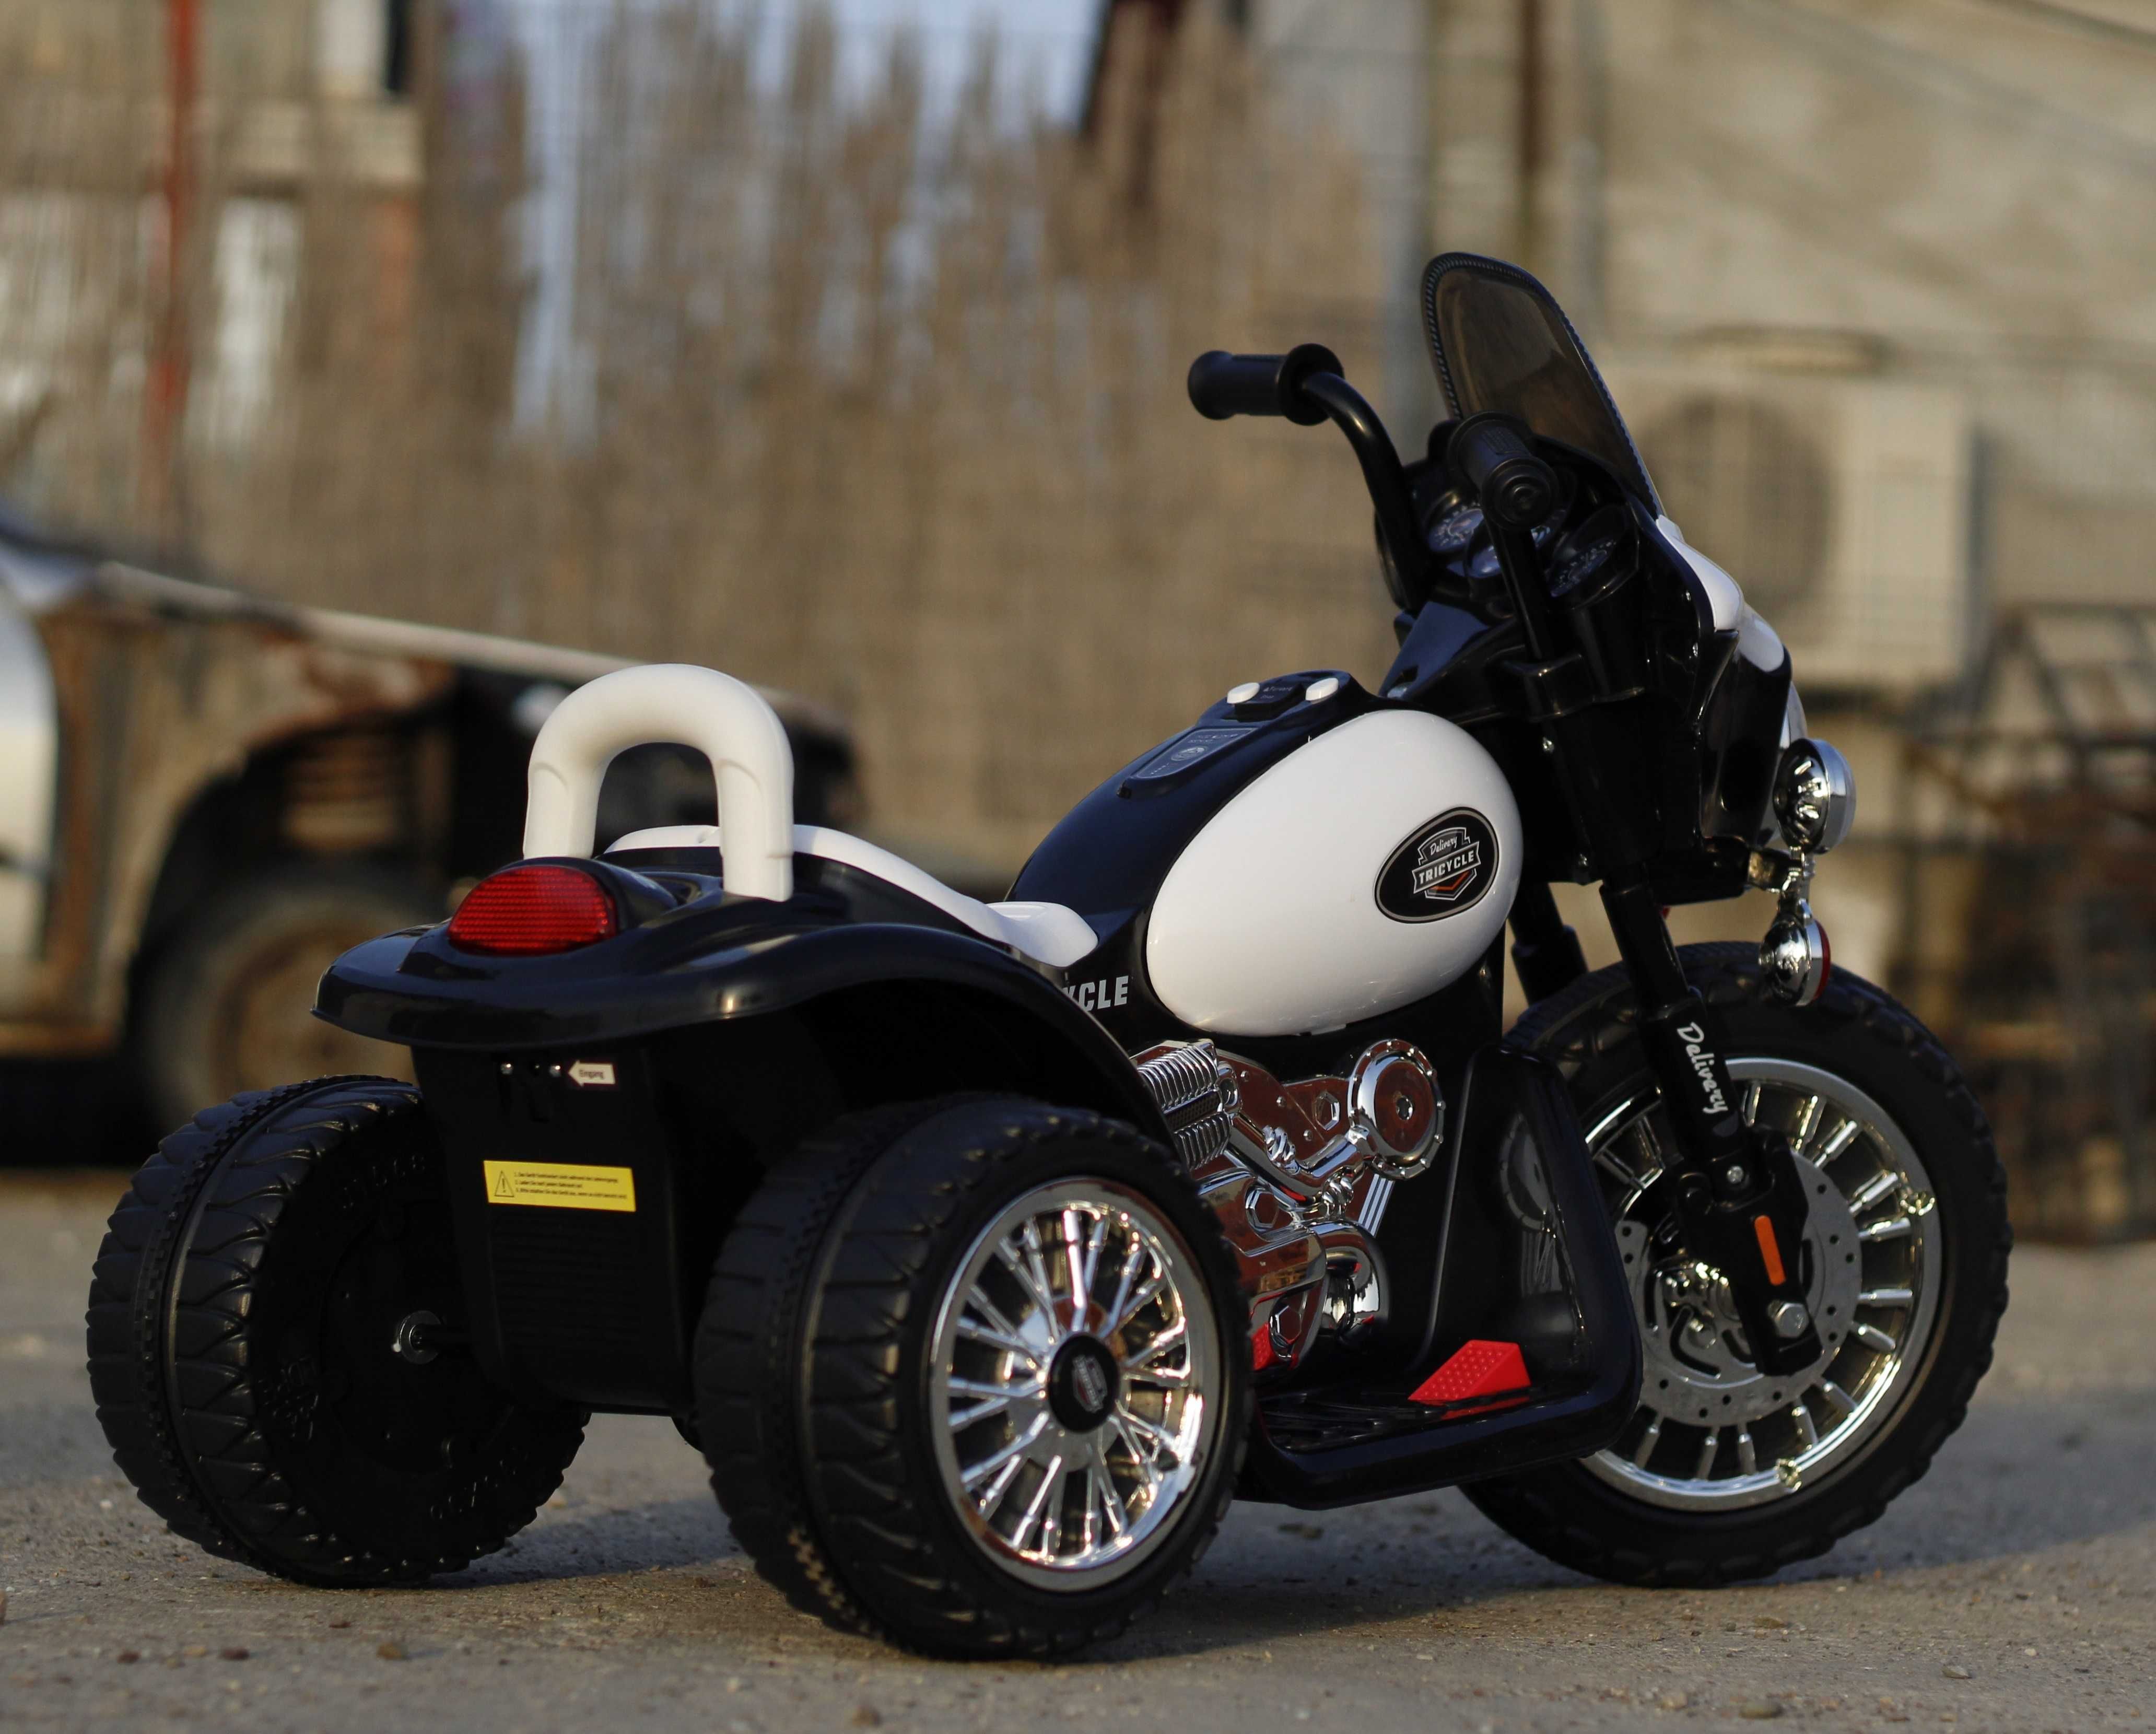 Mini Motocicleta electrica de politie BJT568 35W 6V cu 3 roti #Police